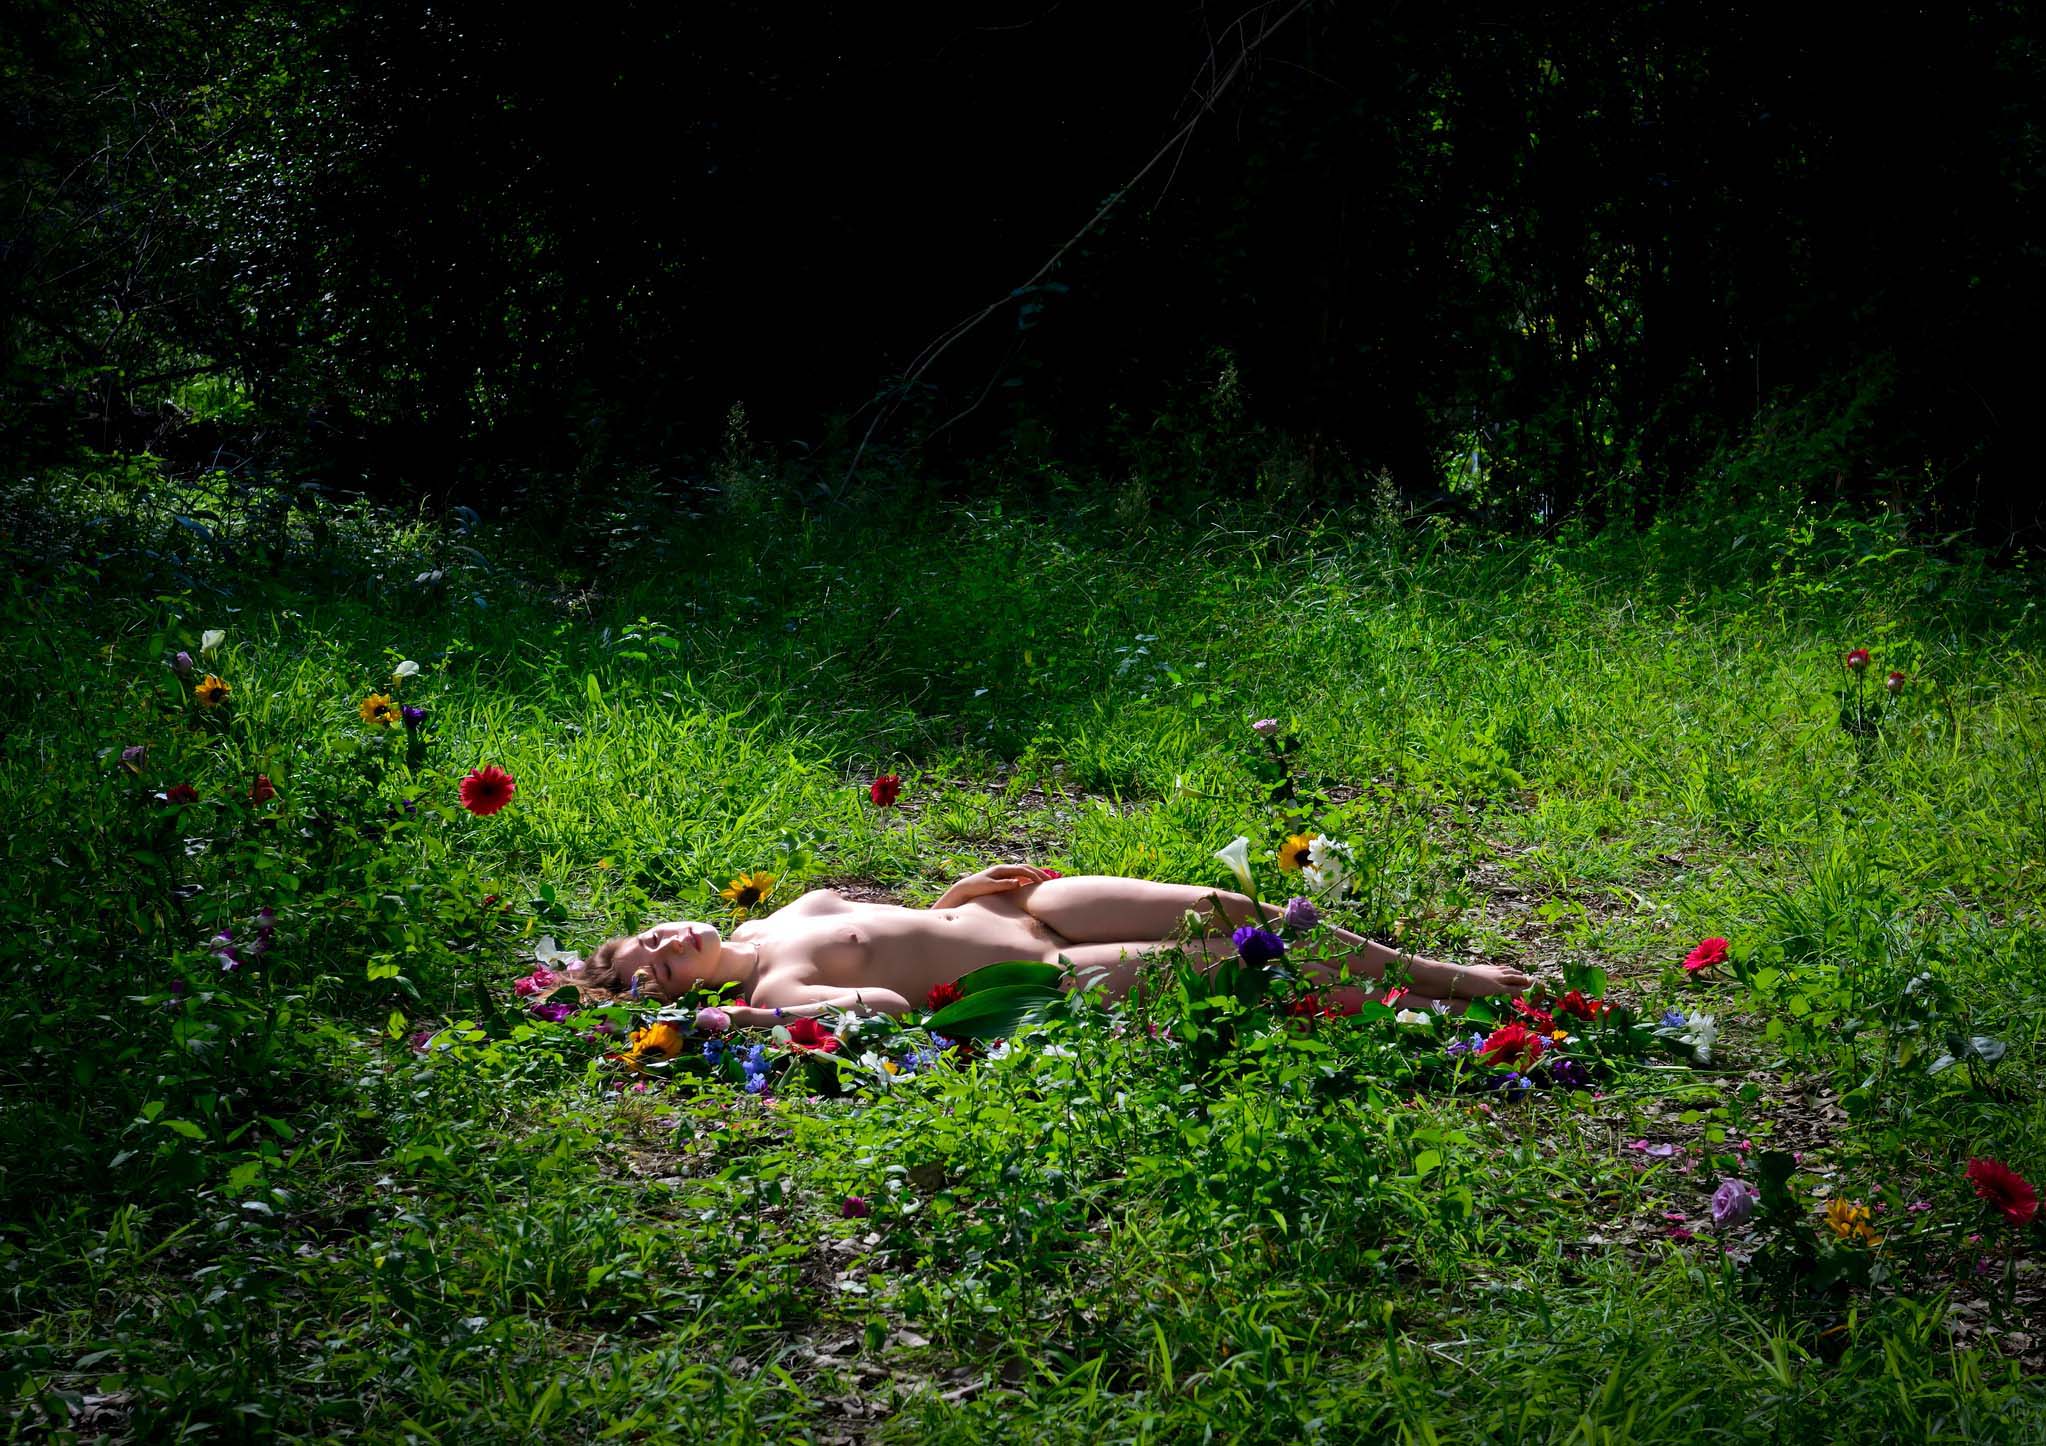 Laura Clarke, Midsummer Dreaming, 30. April 2013